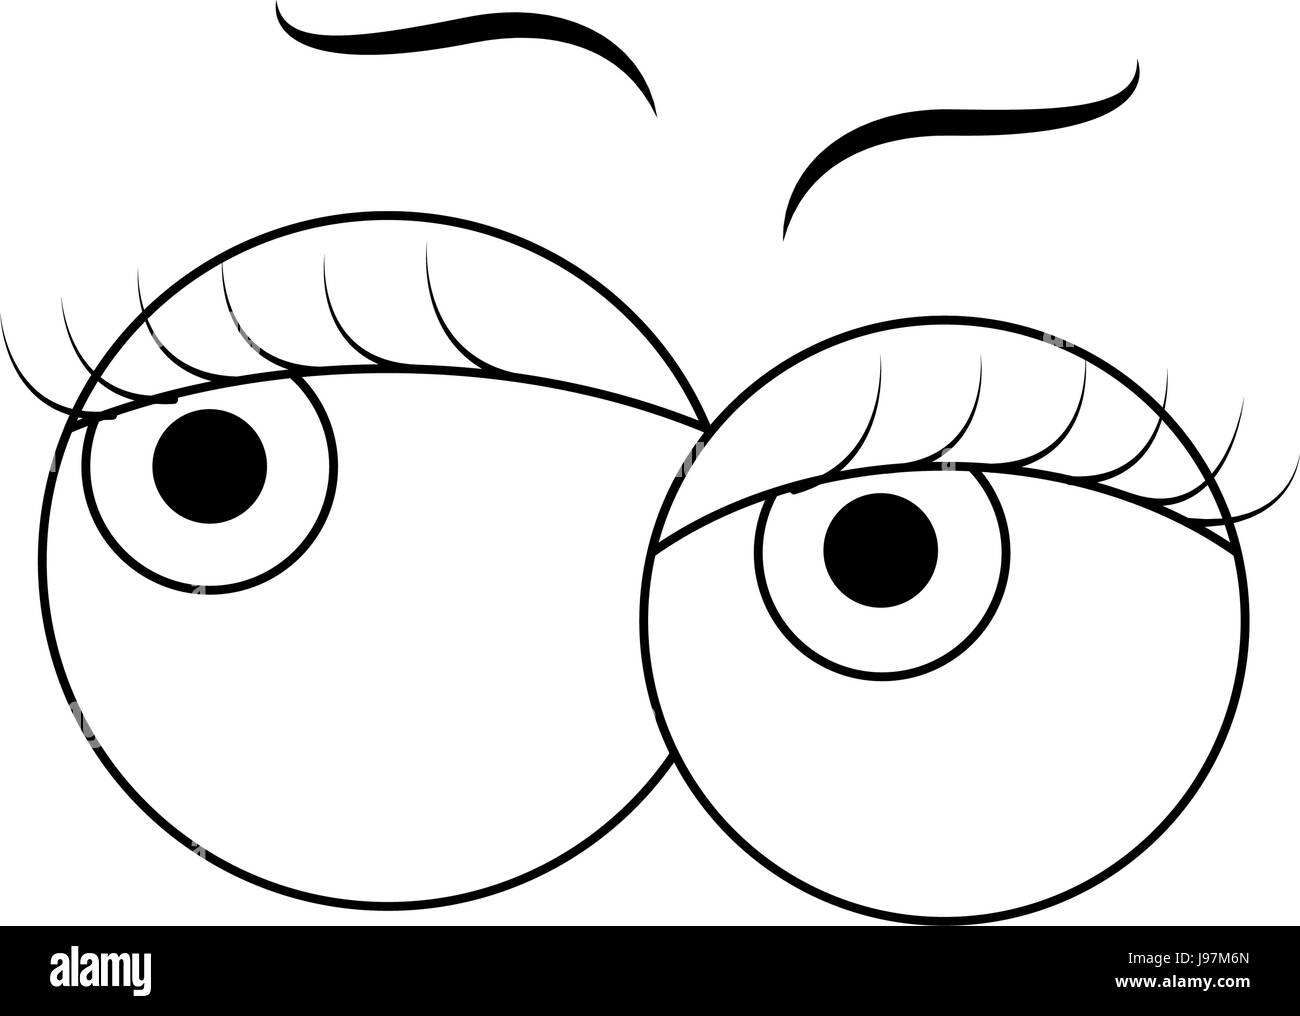 Crazy cartoon eyes Stock Vector